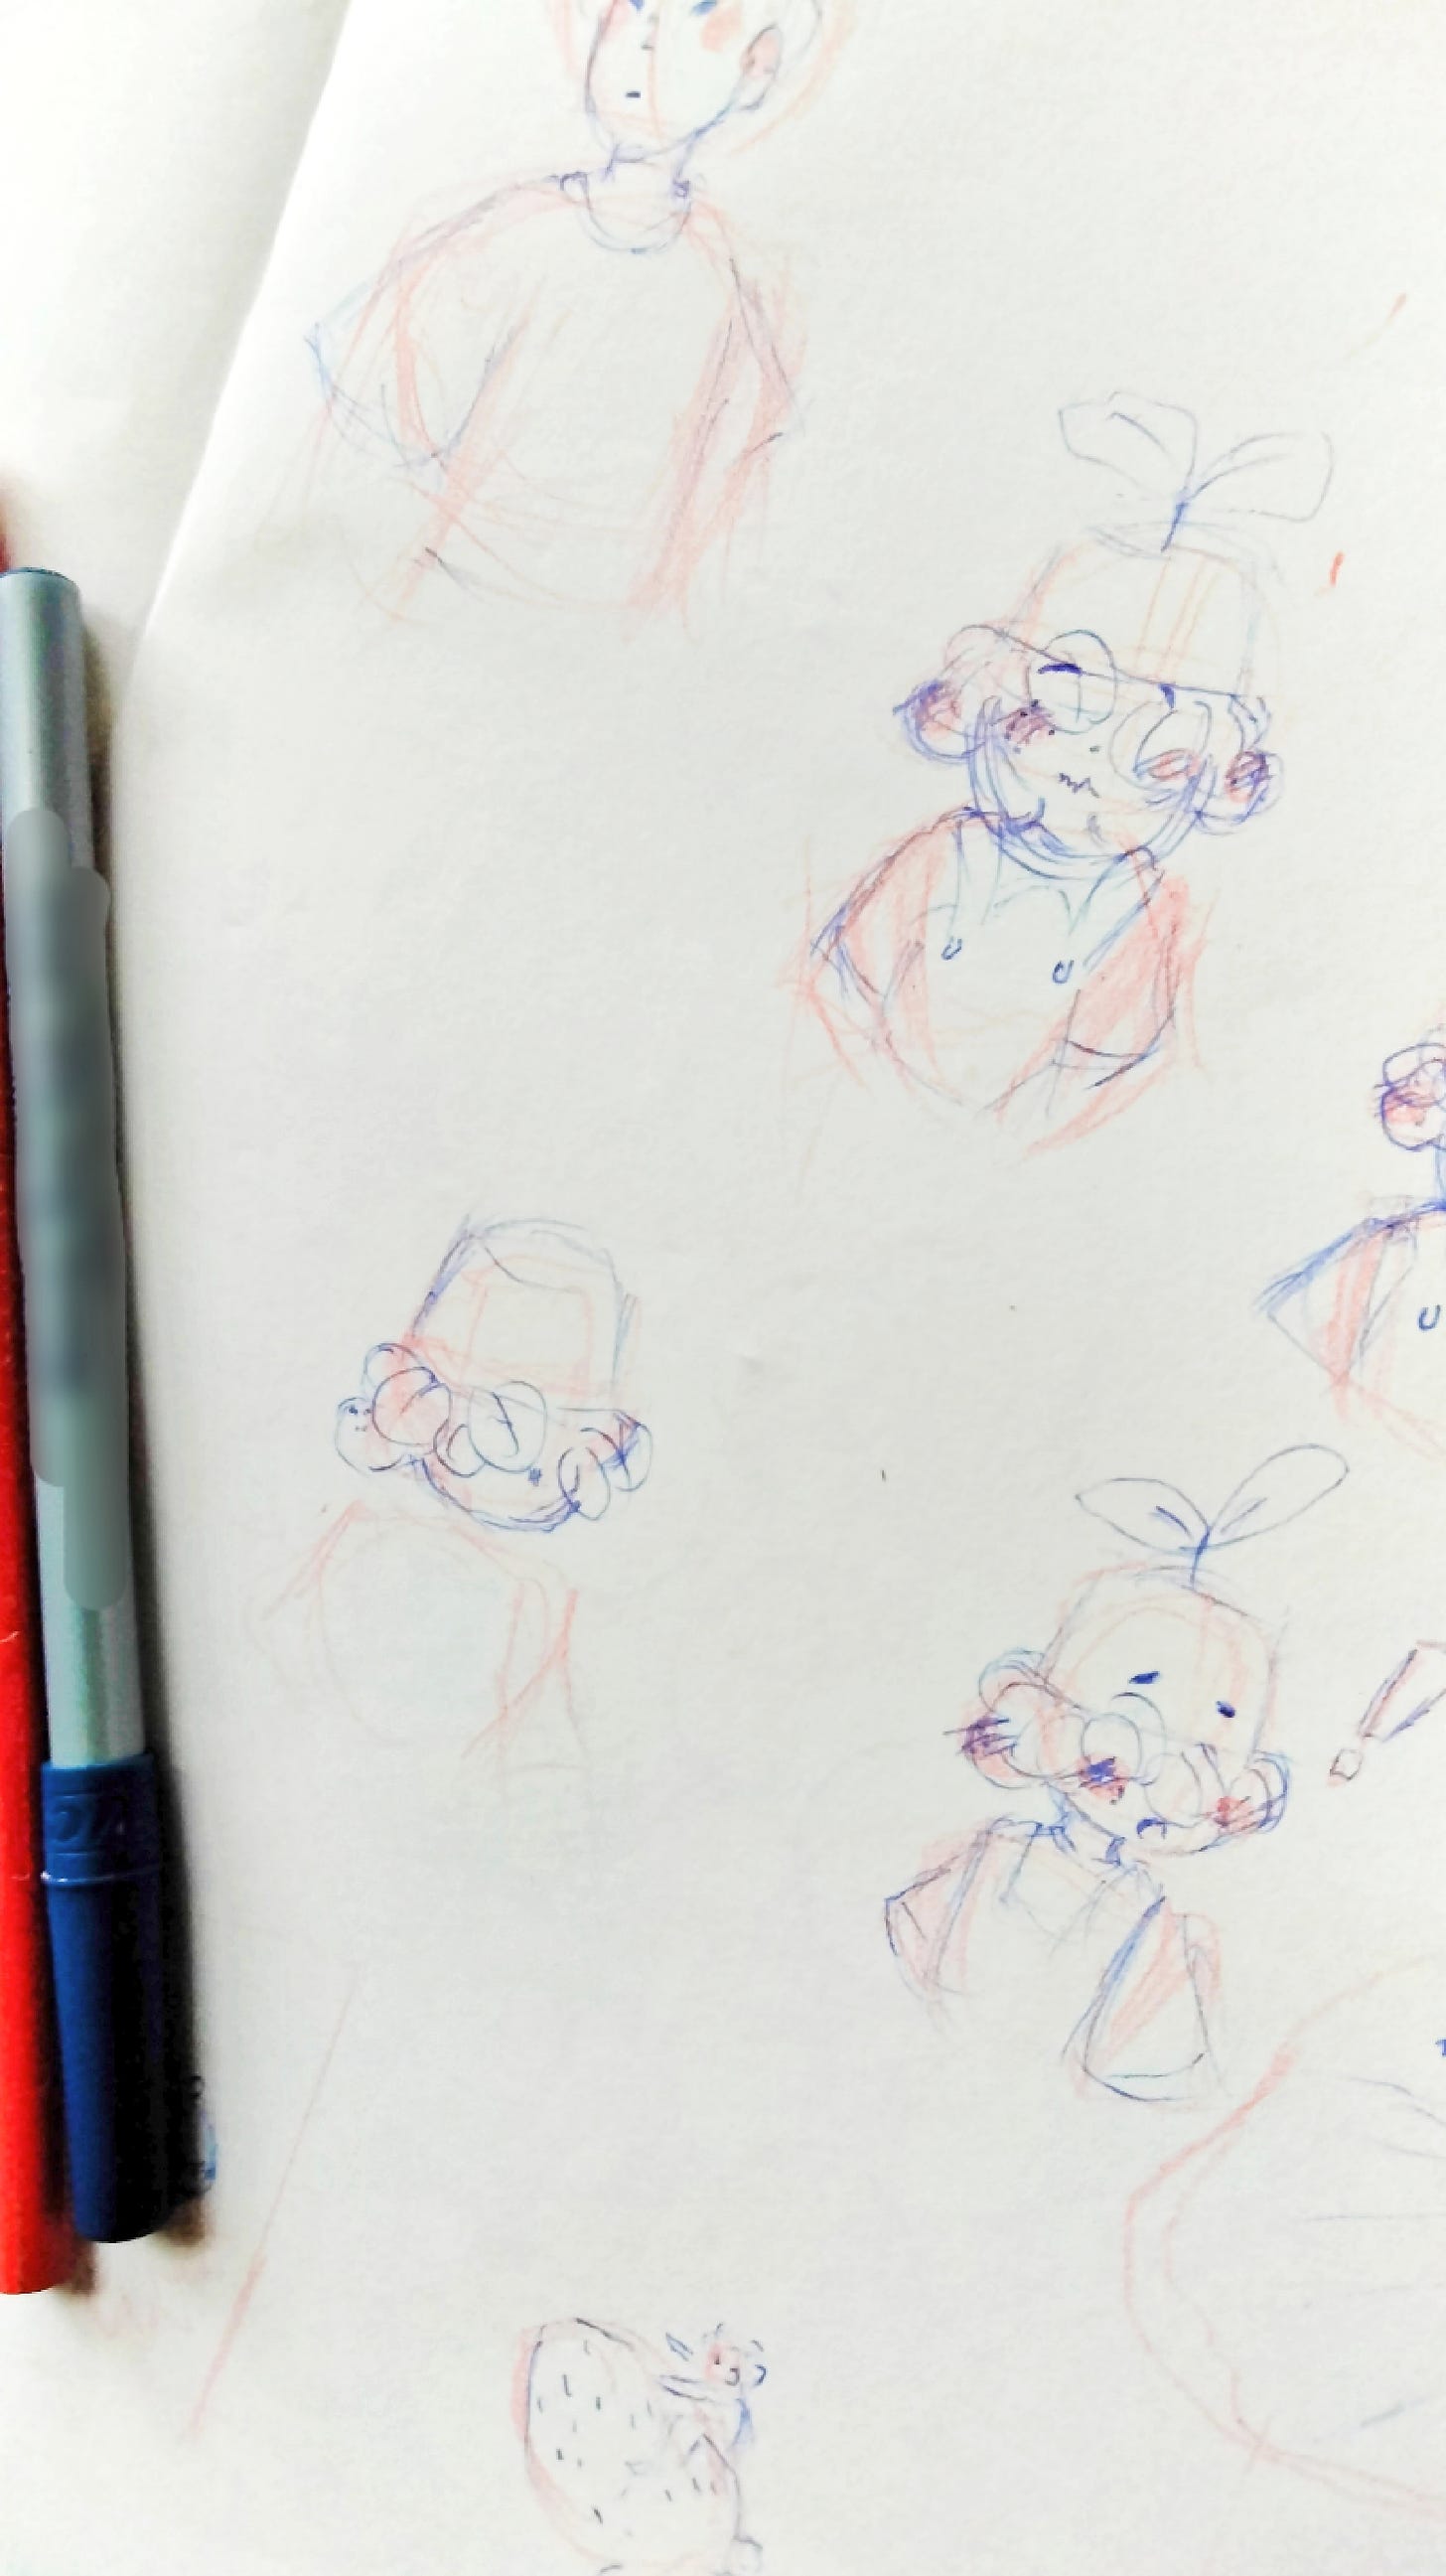 Sketchbook sketch's